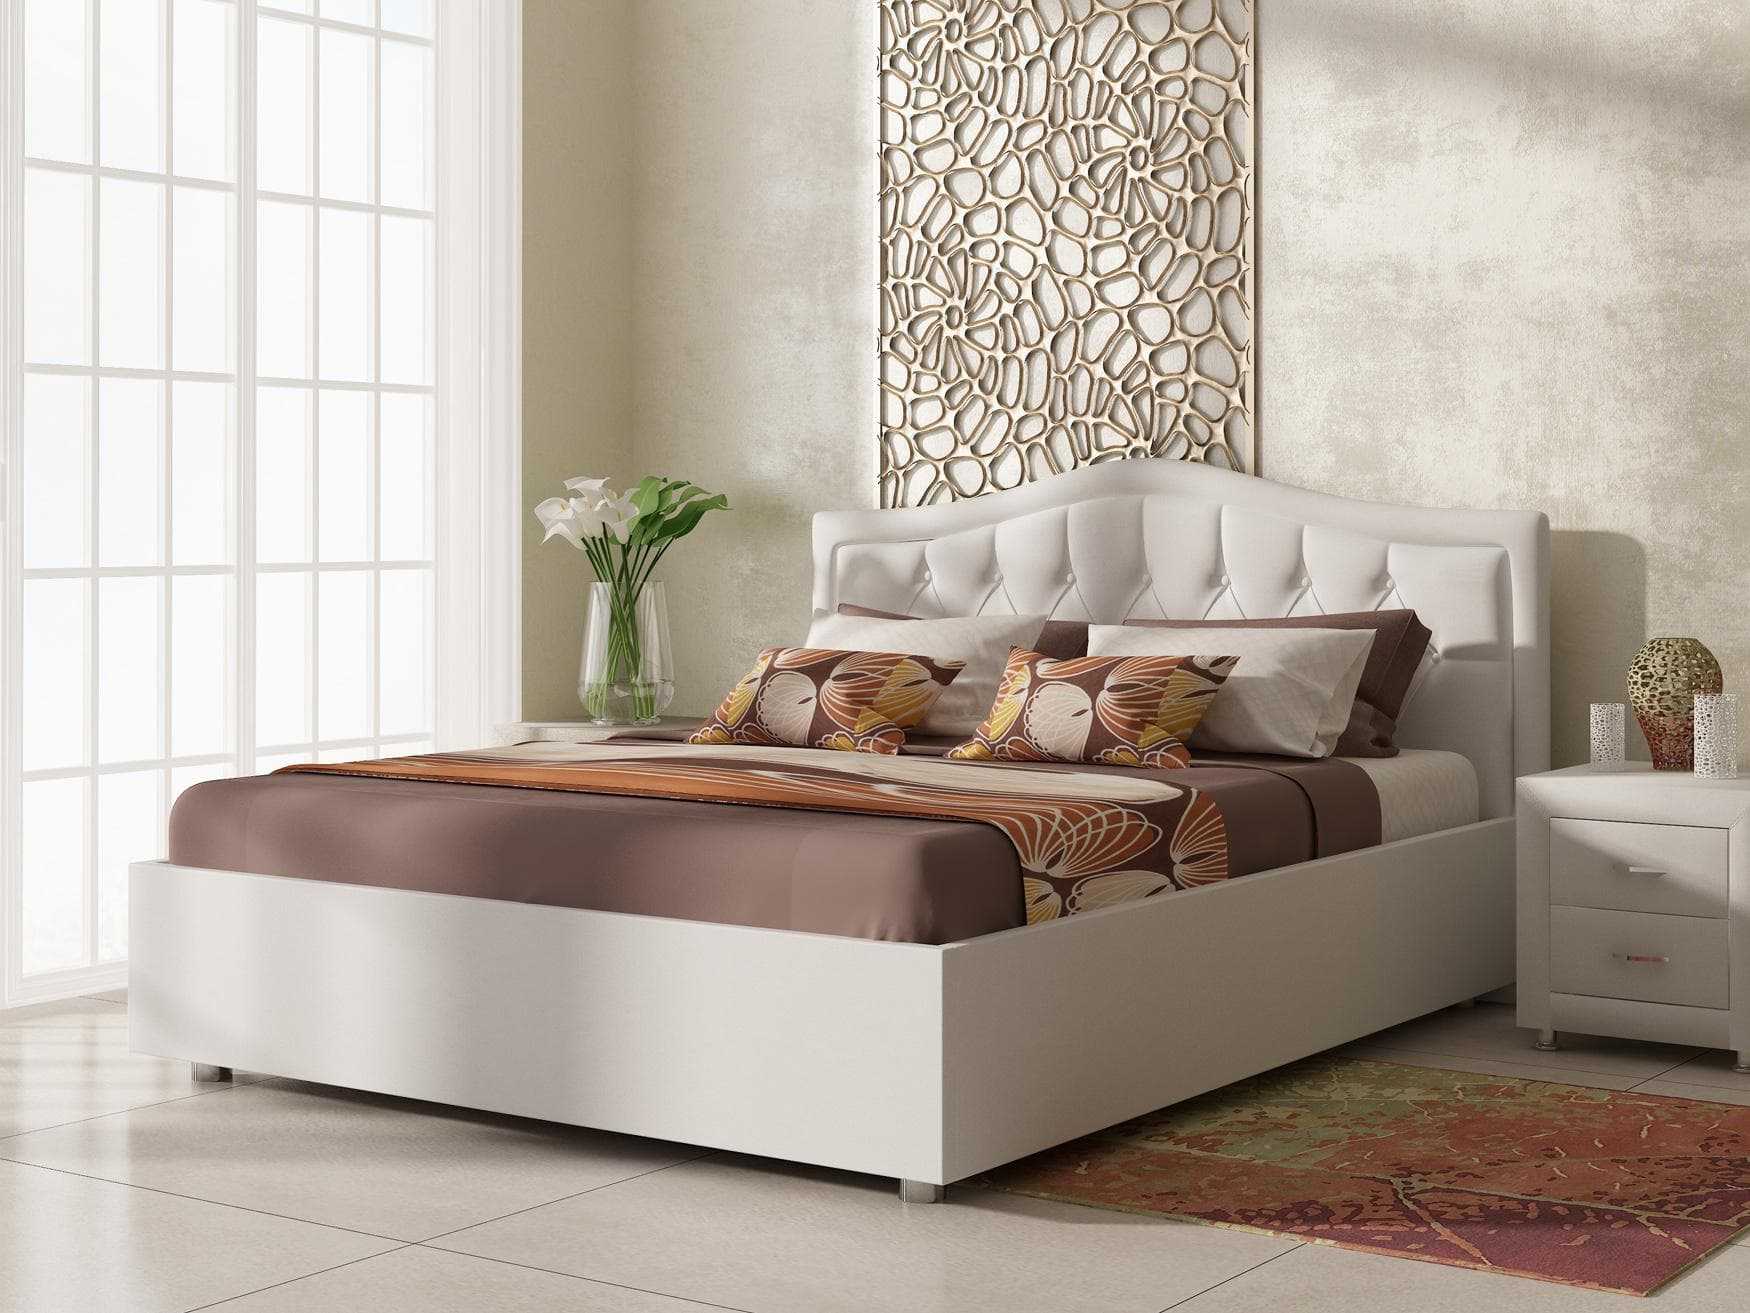 Кровать для подростка: как выбрать удобную кровать? 50 популярных моделей кроватей